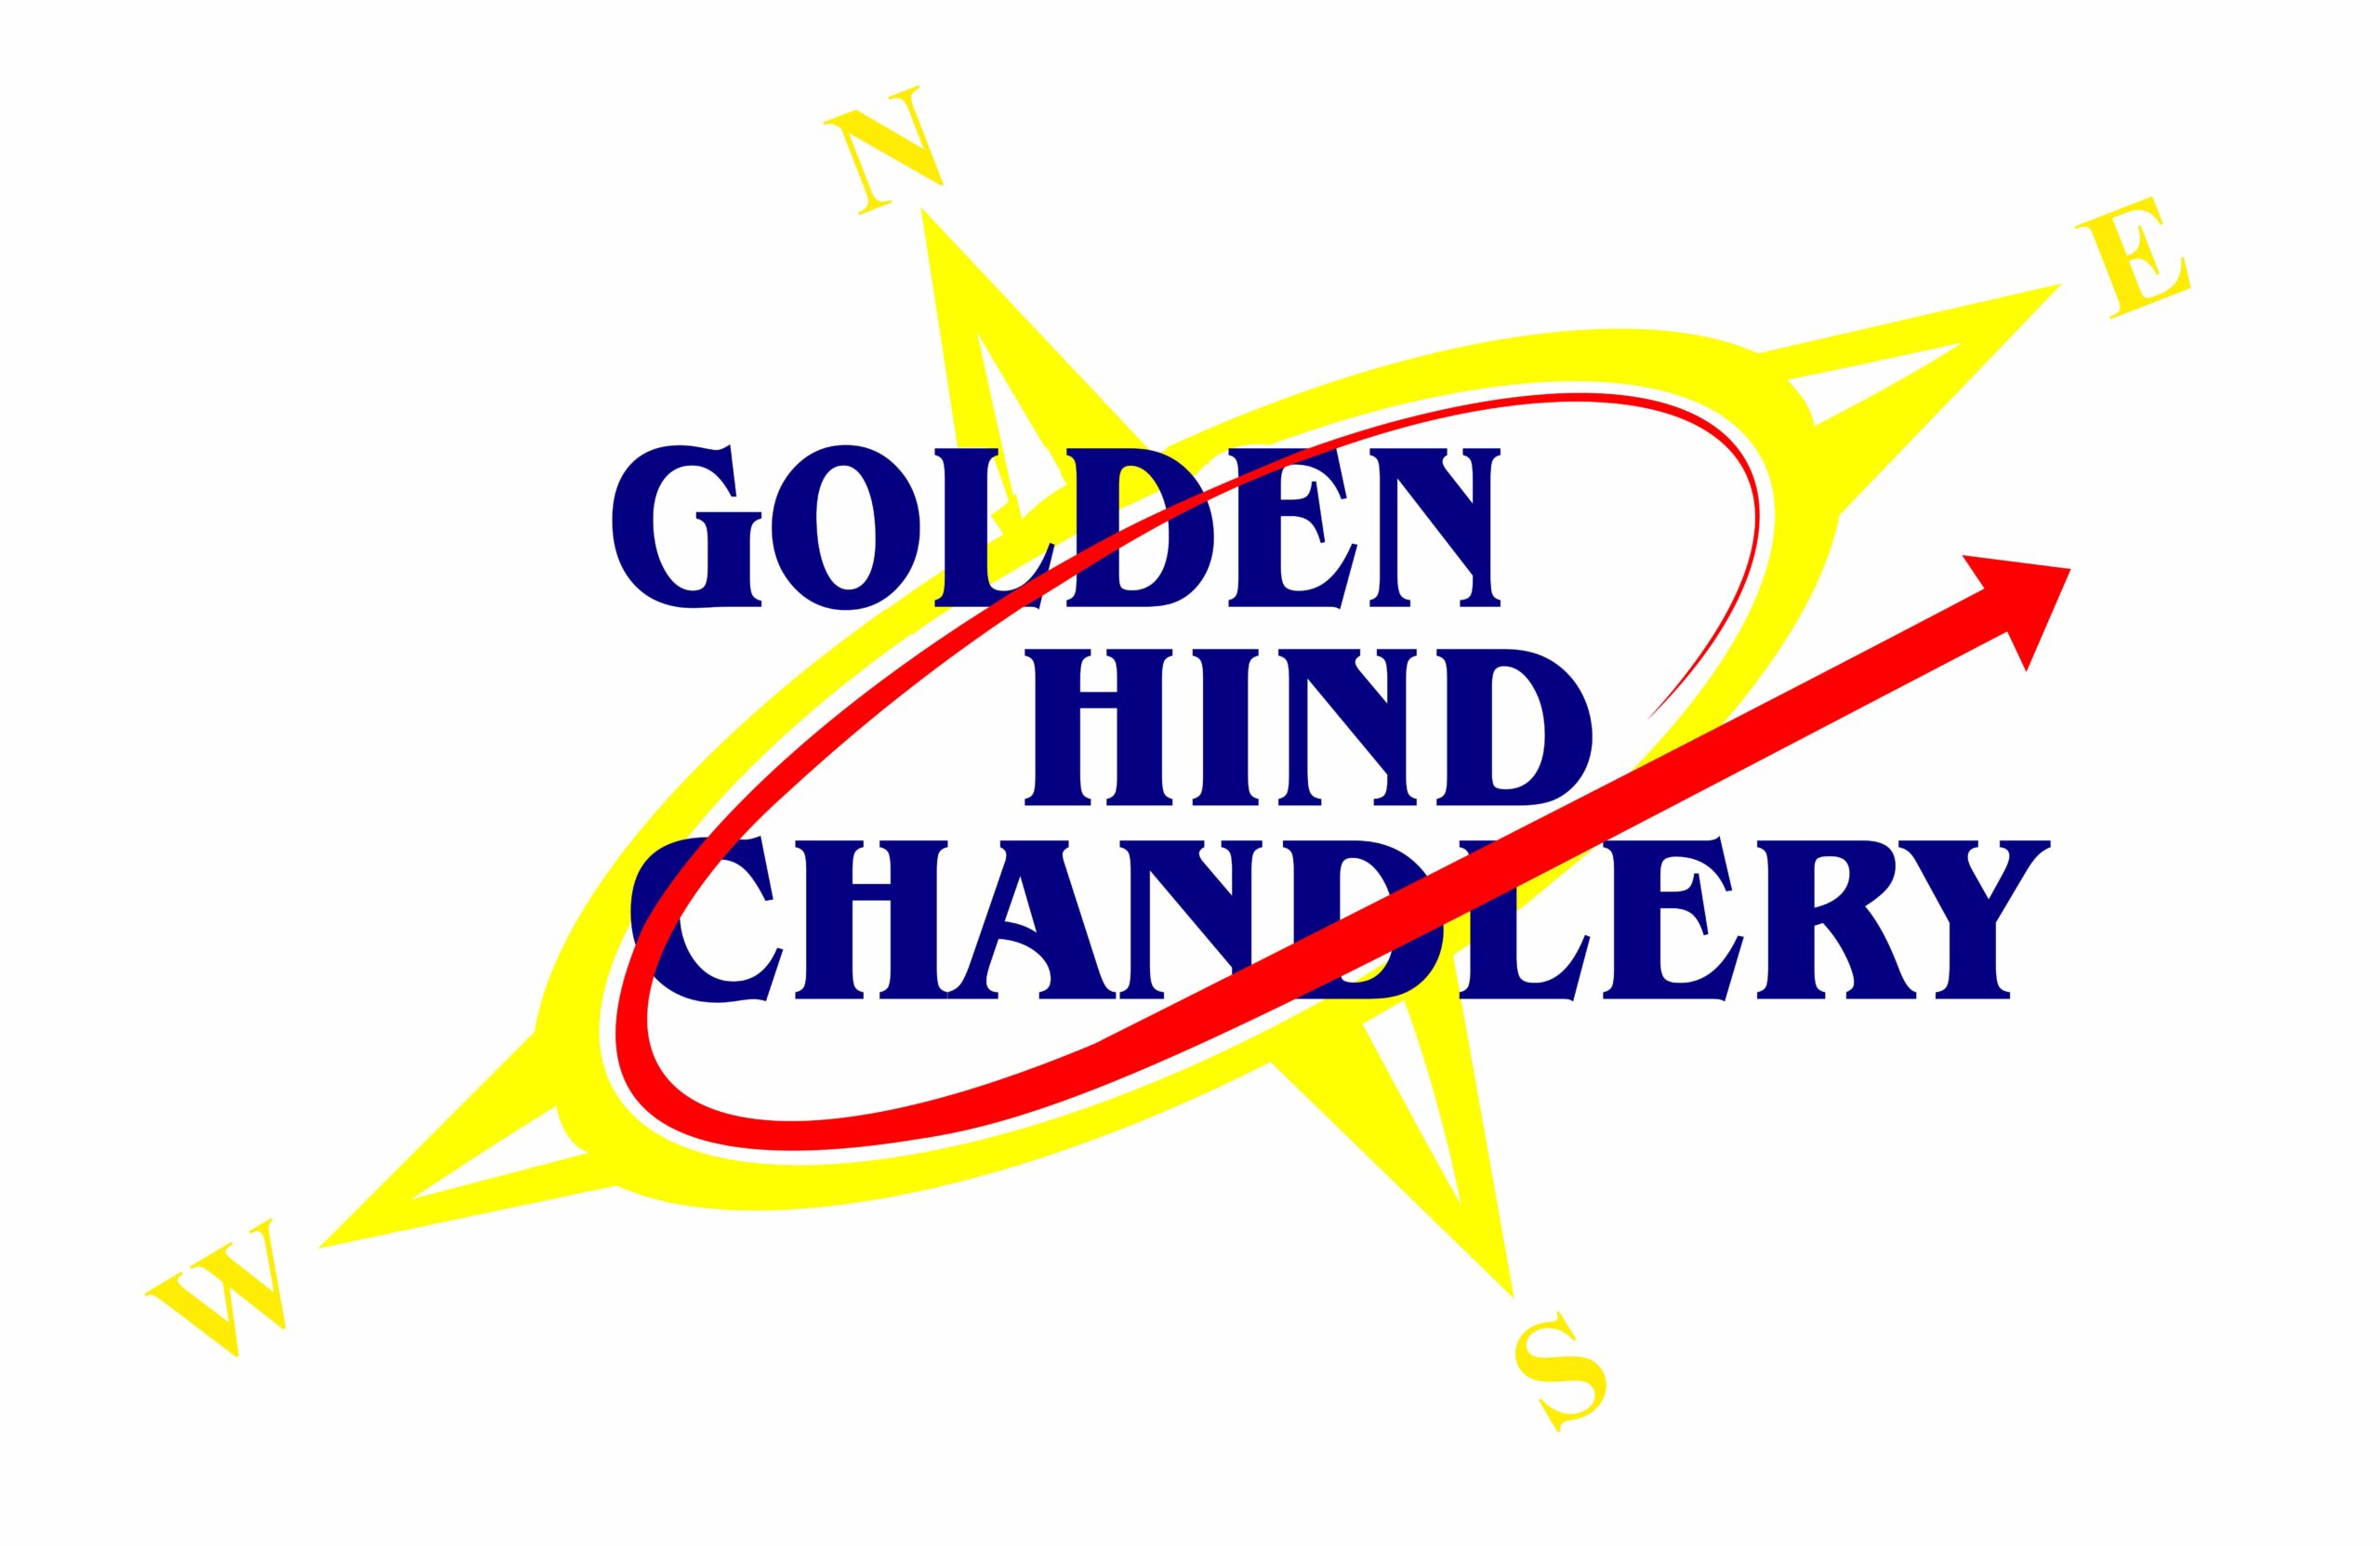 GoldenHindChandlery